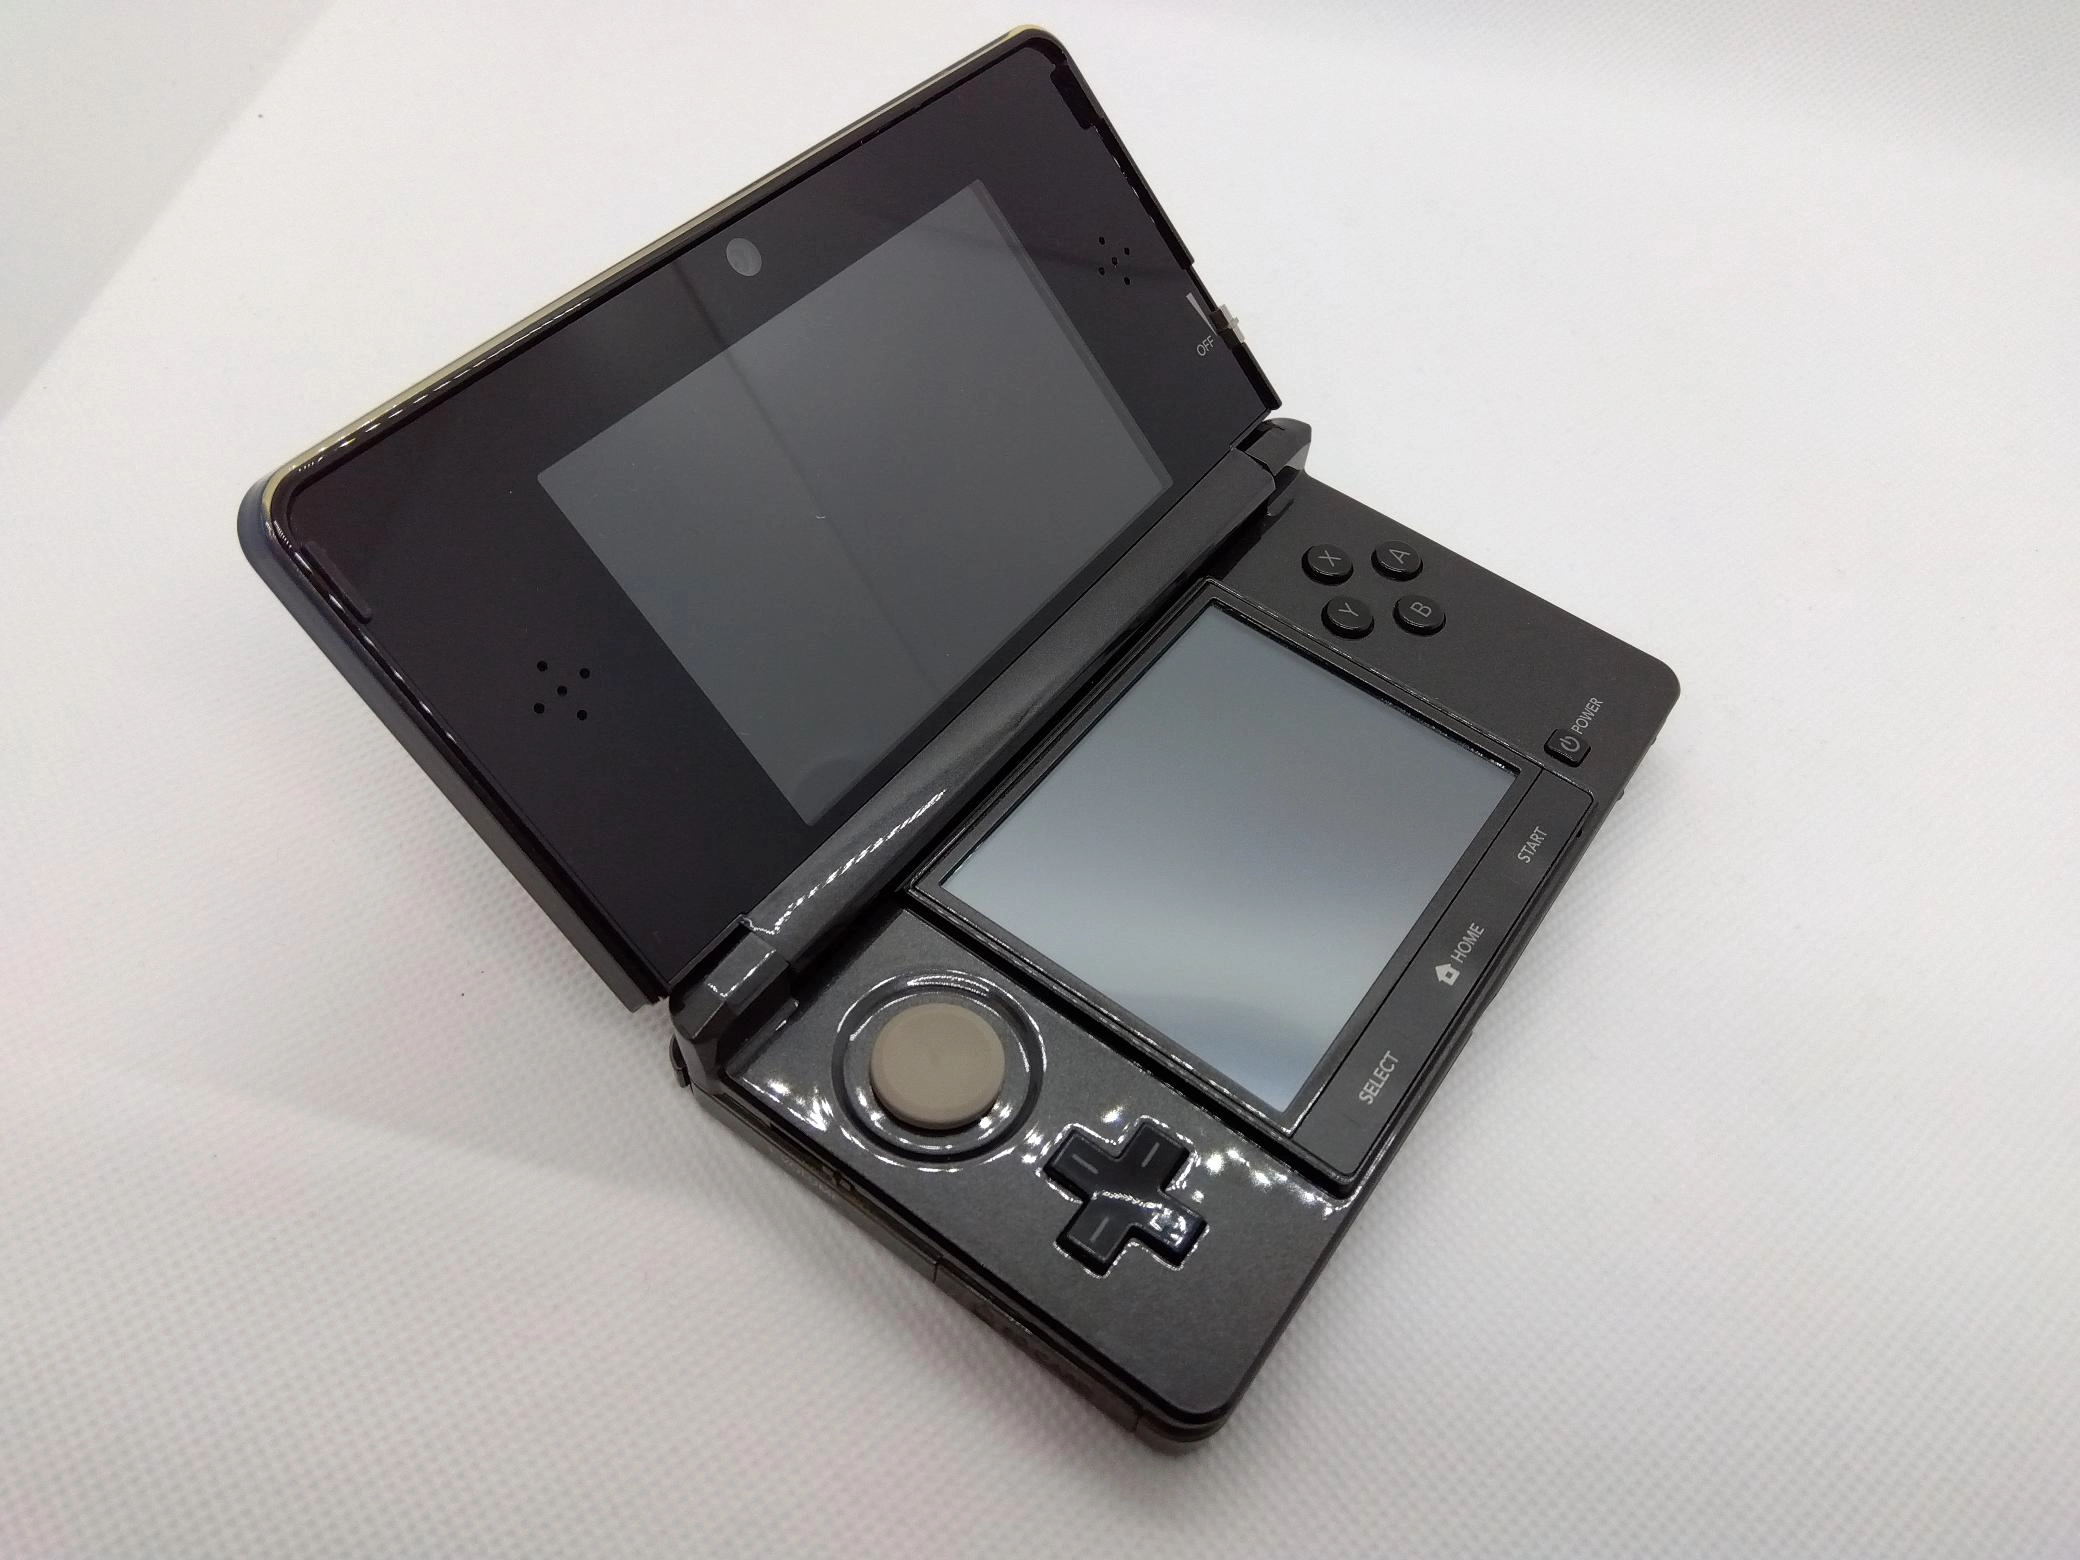 MONSTER HUNTER3 tri-G スペシャルパック 3DS本体のみ - 携帯用ゲーム本体